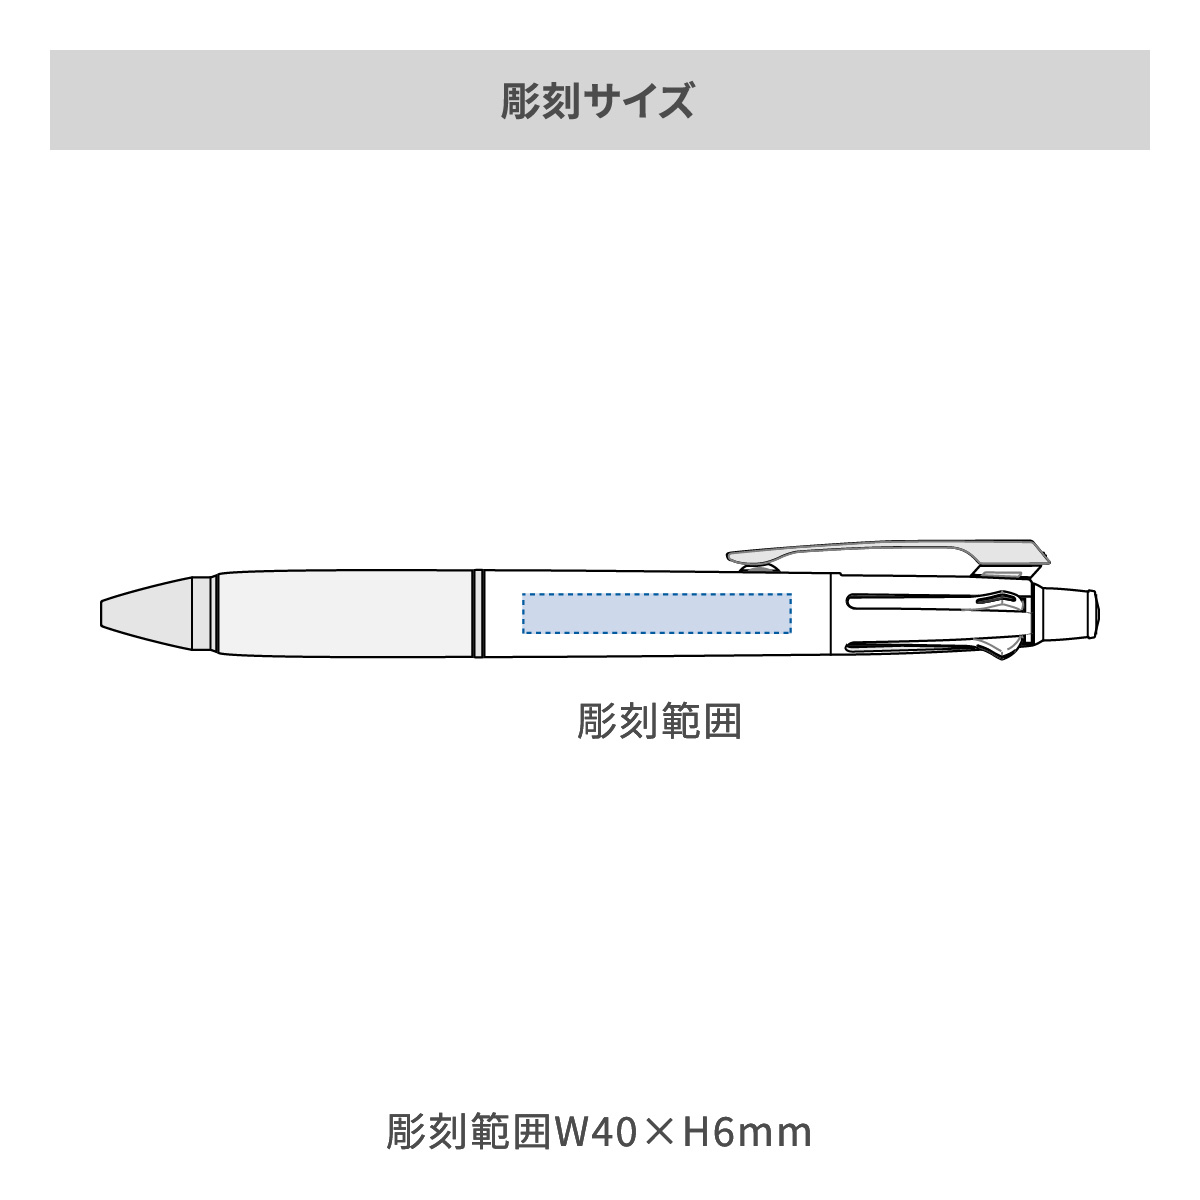 【短納期】三菱鉛筆 ジェットストリーム 多機能ペン 4&1 0.7mm【多機能ペン / レーザー彫刻】 画像2